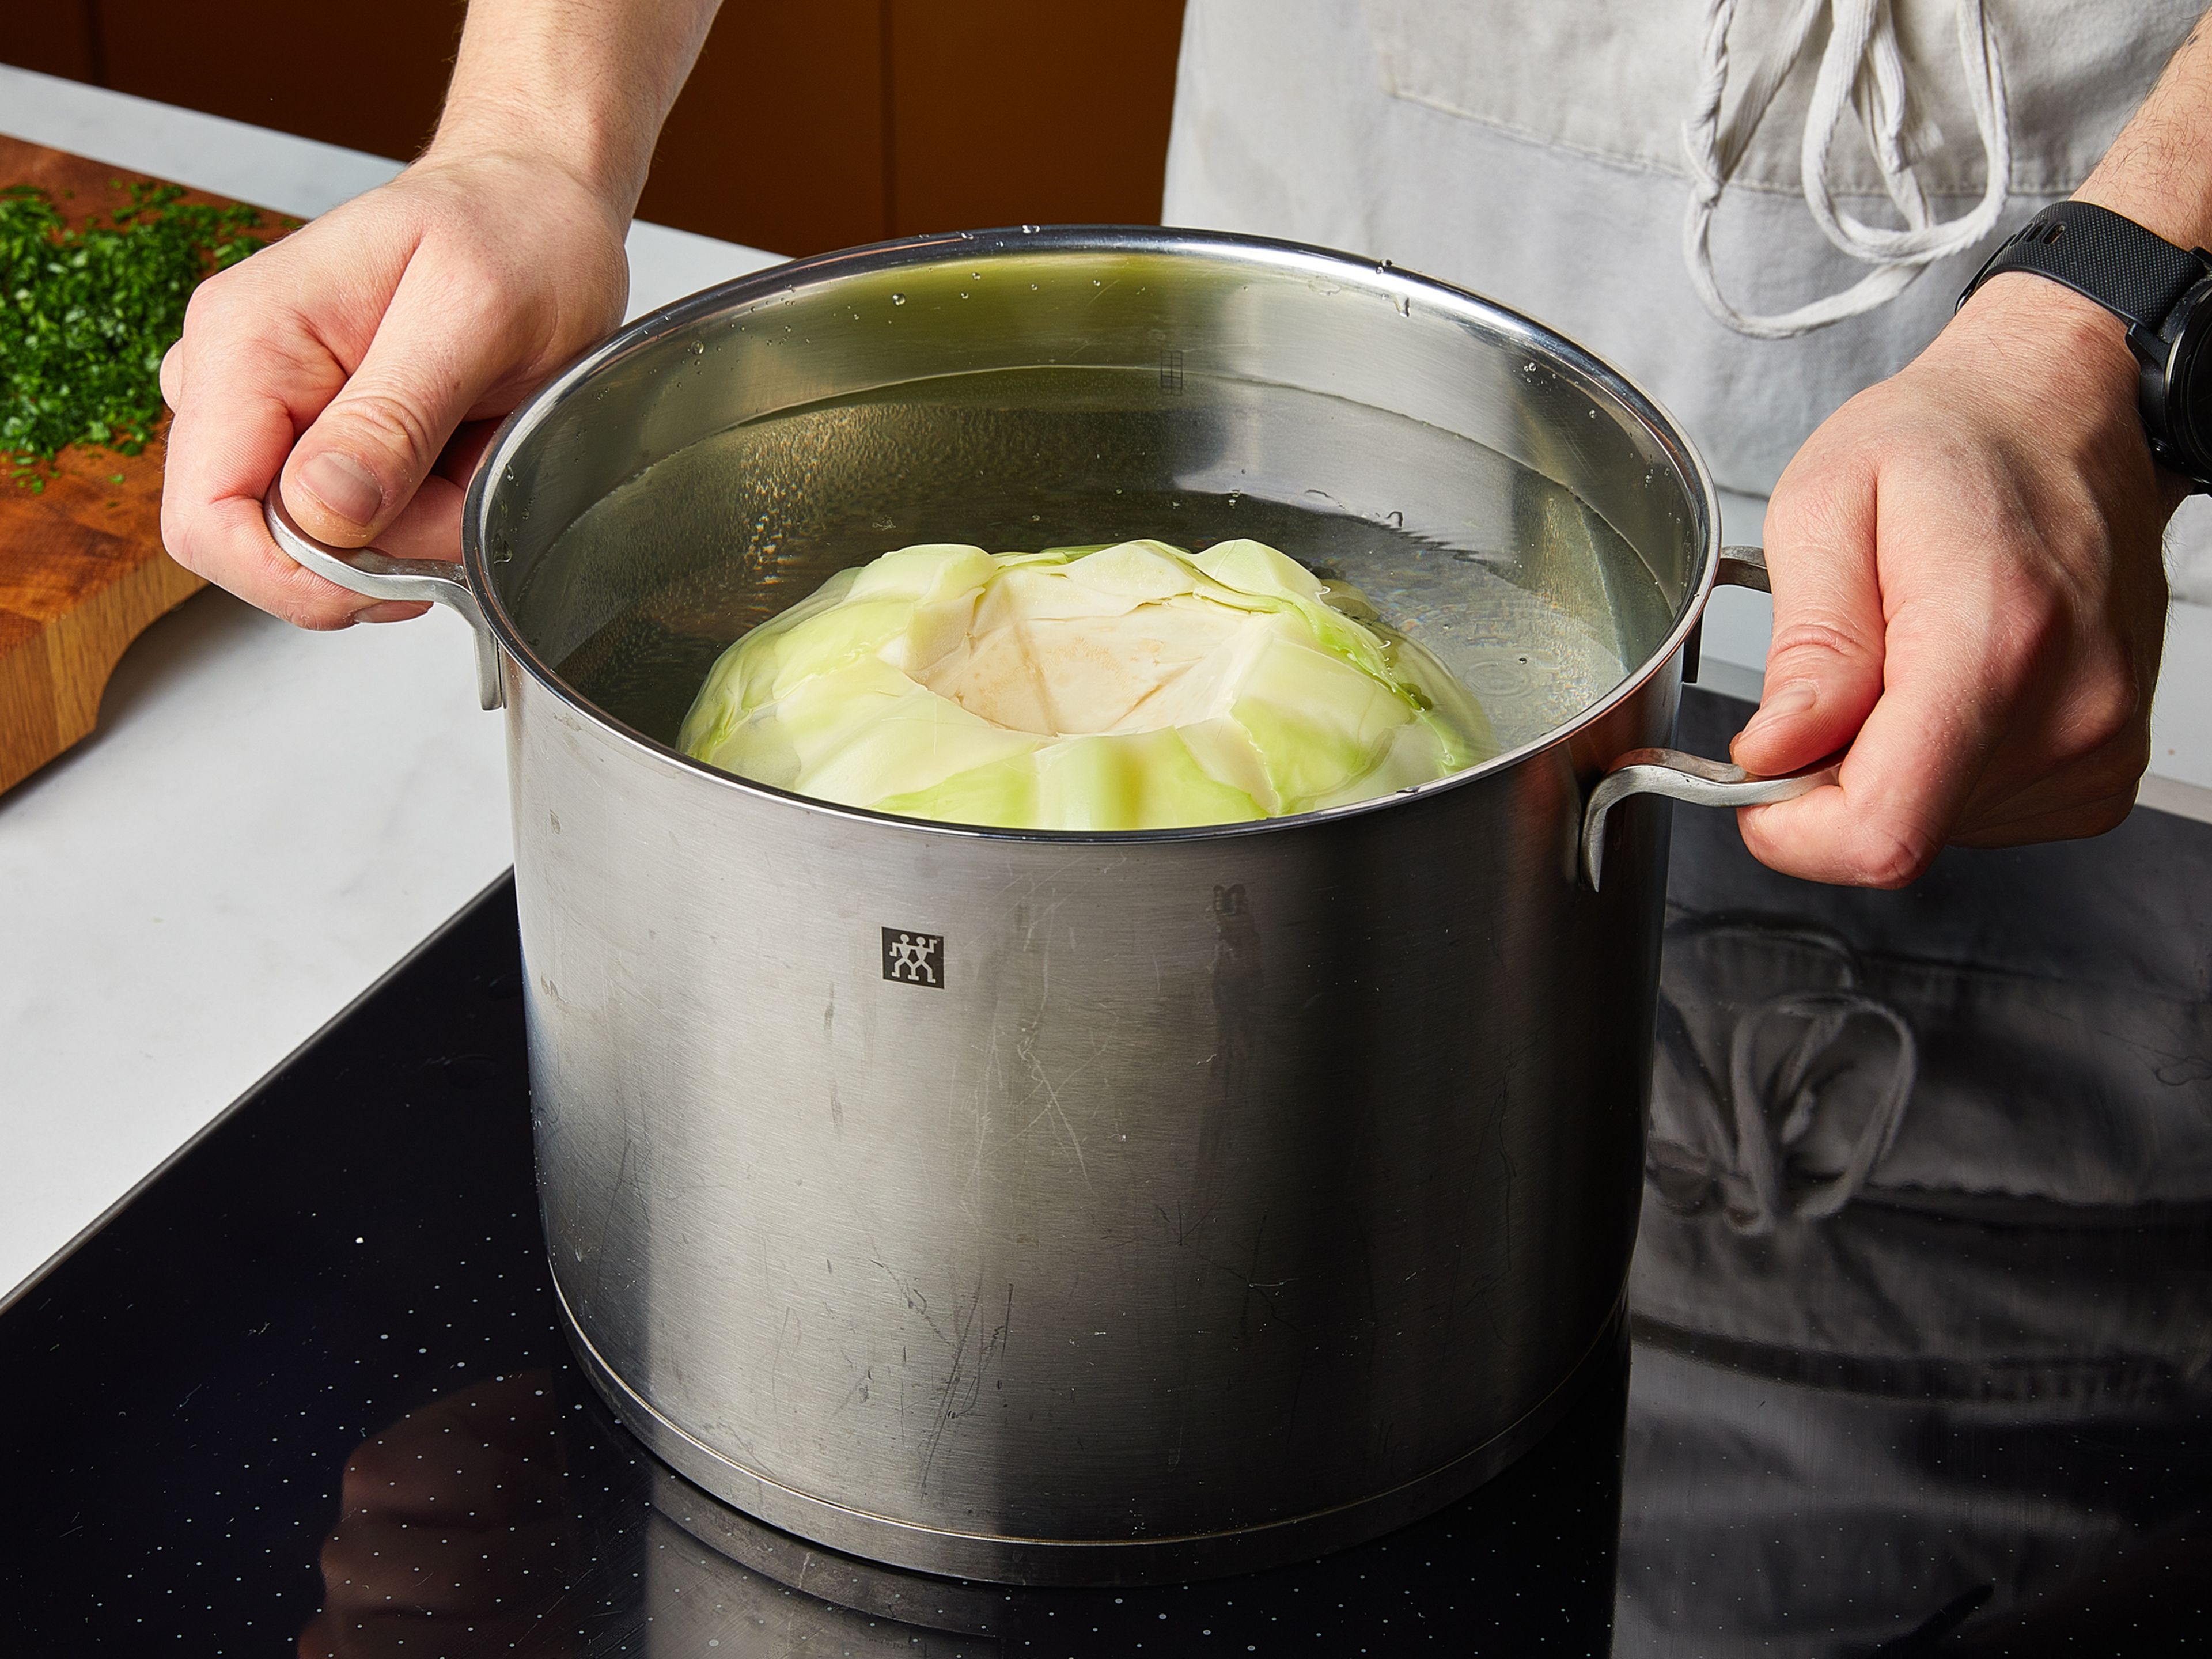 In einem großen Topf Wasser mit Salz zum Kochen bringen. Den Strunk vom Kohlkopf entfernen. Kohlkopf ca. 10 Min. blanchieren, bis die äußeren Blätter weich sind und sich leicht ablösen lassen. Aus dem Wasser nehmen, kurz abkühlen lassen und genügend Kohlblätter für die Menge der Rouladen abziehen. Petersilie fein hacken. Brötchen in Würfel schneiden. Champignons grob hacken. Zwiebeln schälen und fein würfeln. Knoblauch schälen und fein hacken. Das Wasser aus dem Topf entfernen und den Topf trocken wischen. Den Topf wieder auf mittlere Hitze stellen und etwas Pflanzenöl erhitzen. Champignons und die Hälfte der Zwiebelwürfel zugeben und ca. 3–4 Min. glasig dünsten. Mit Pflanzenmilch ablöschen und großzügig mit gemahlenem Muskat, Senf, Salz und Pfeffer würzen.